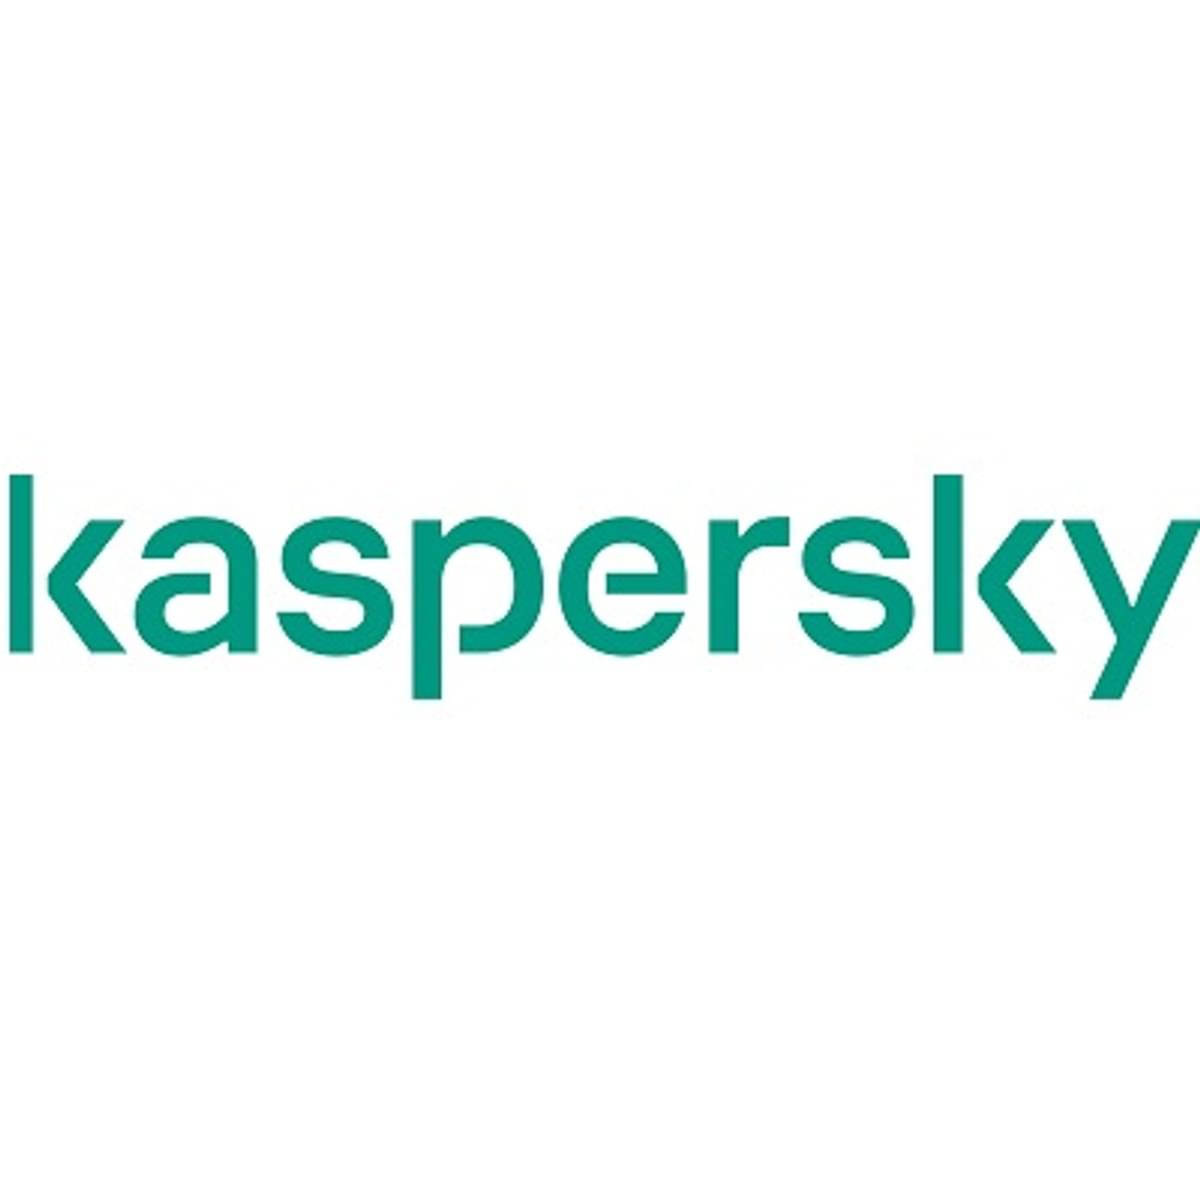 Kaspersky publiceert zijn eerste Transparency Report image